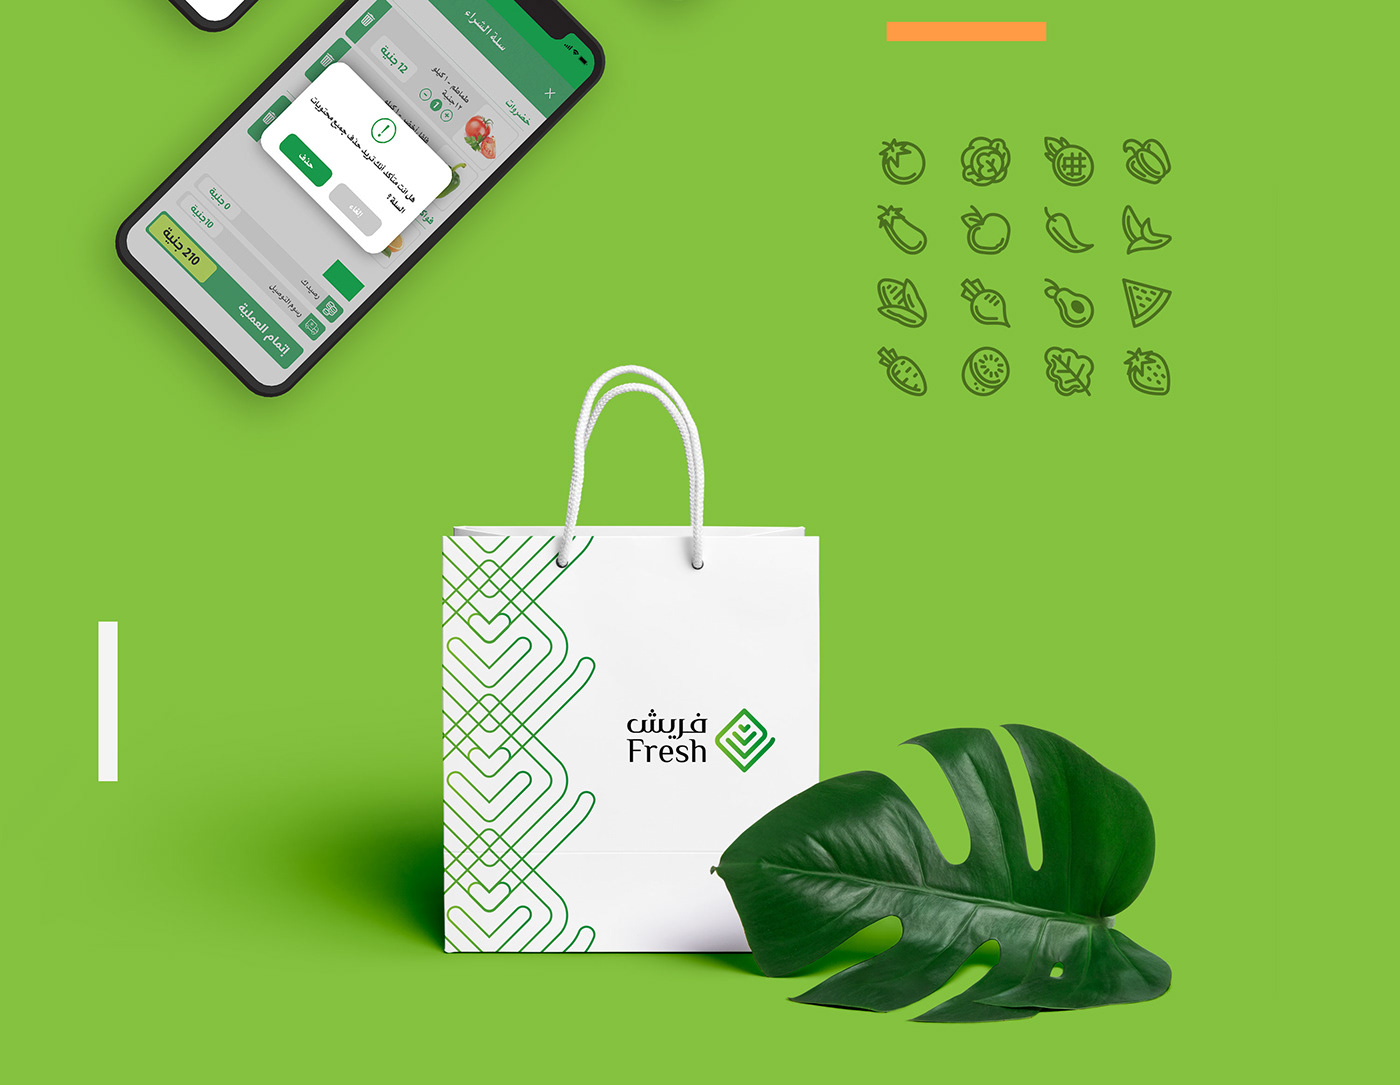 mobile application branding  app logo Sudan fresh vegetabals Food  green